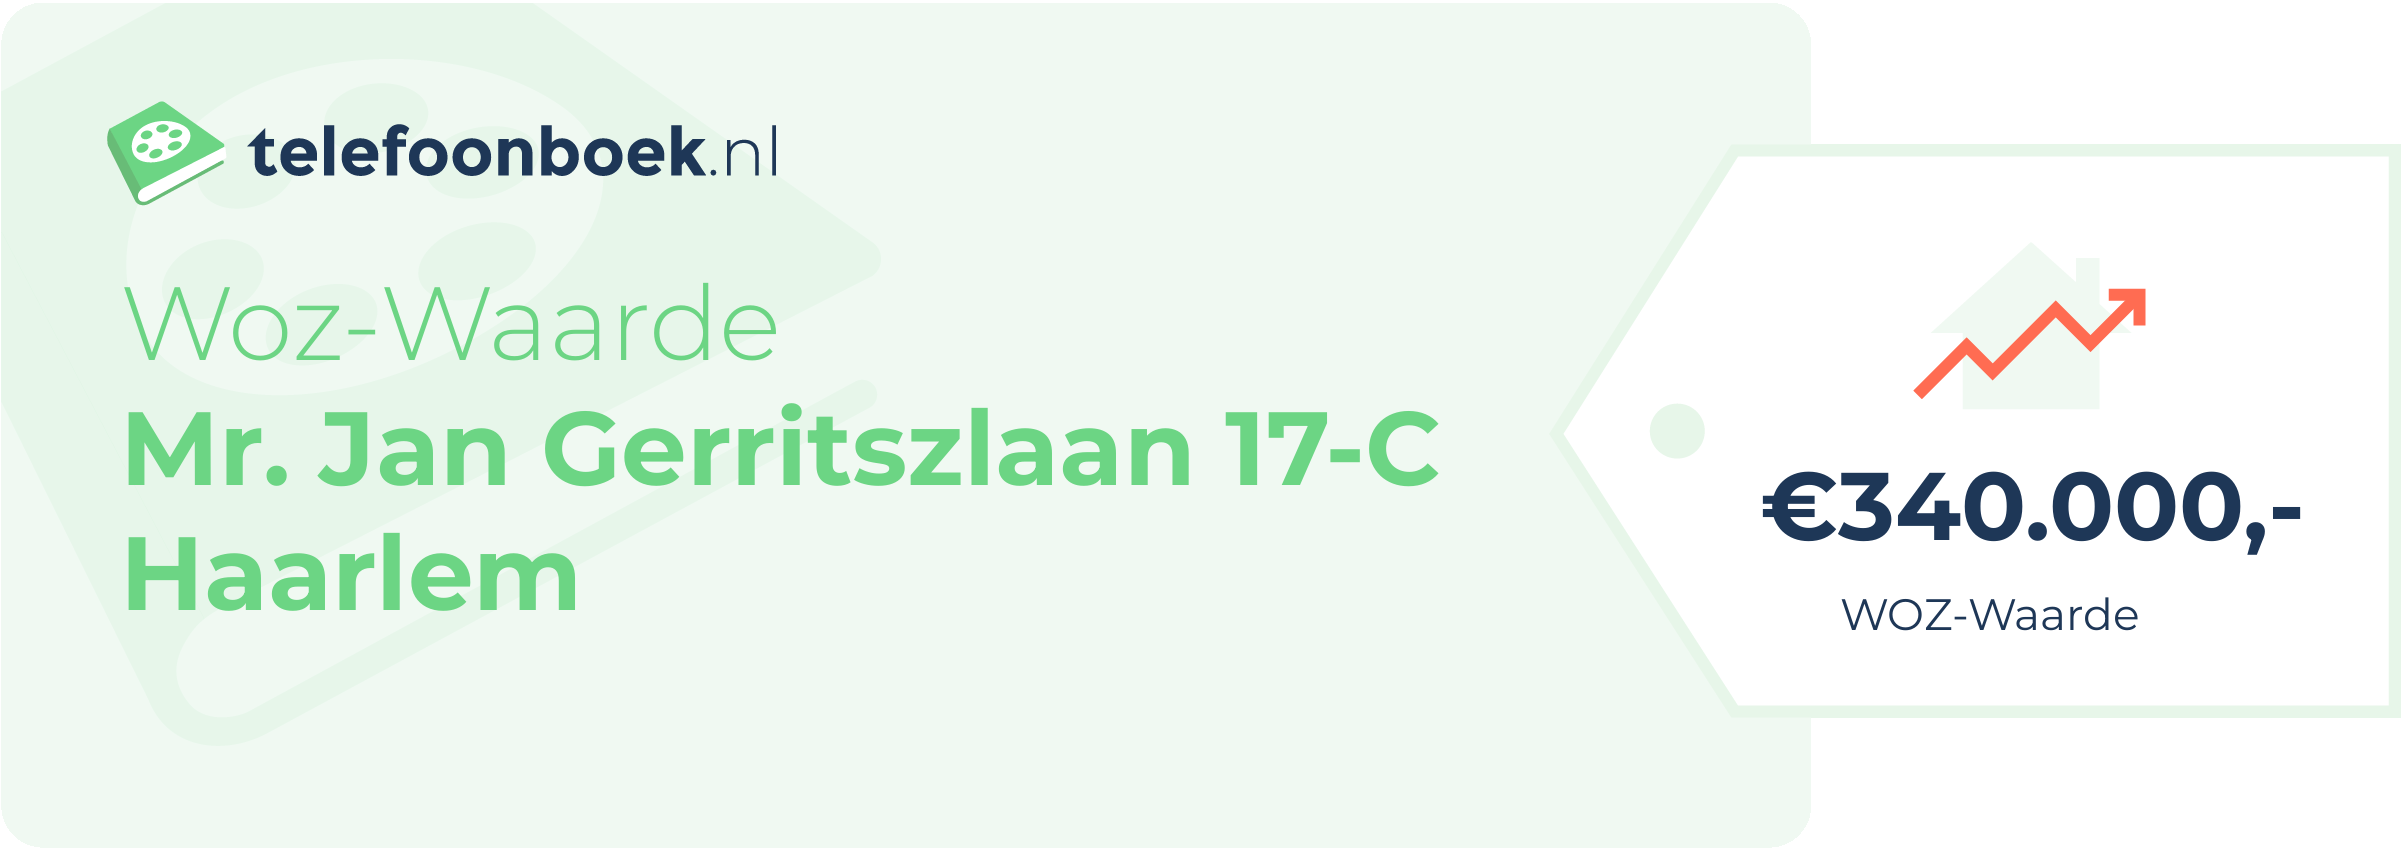 WOZ-waarde Mr. Jan Gerritszlaan 17-C Haarlem